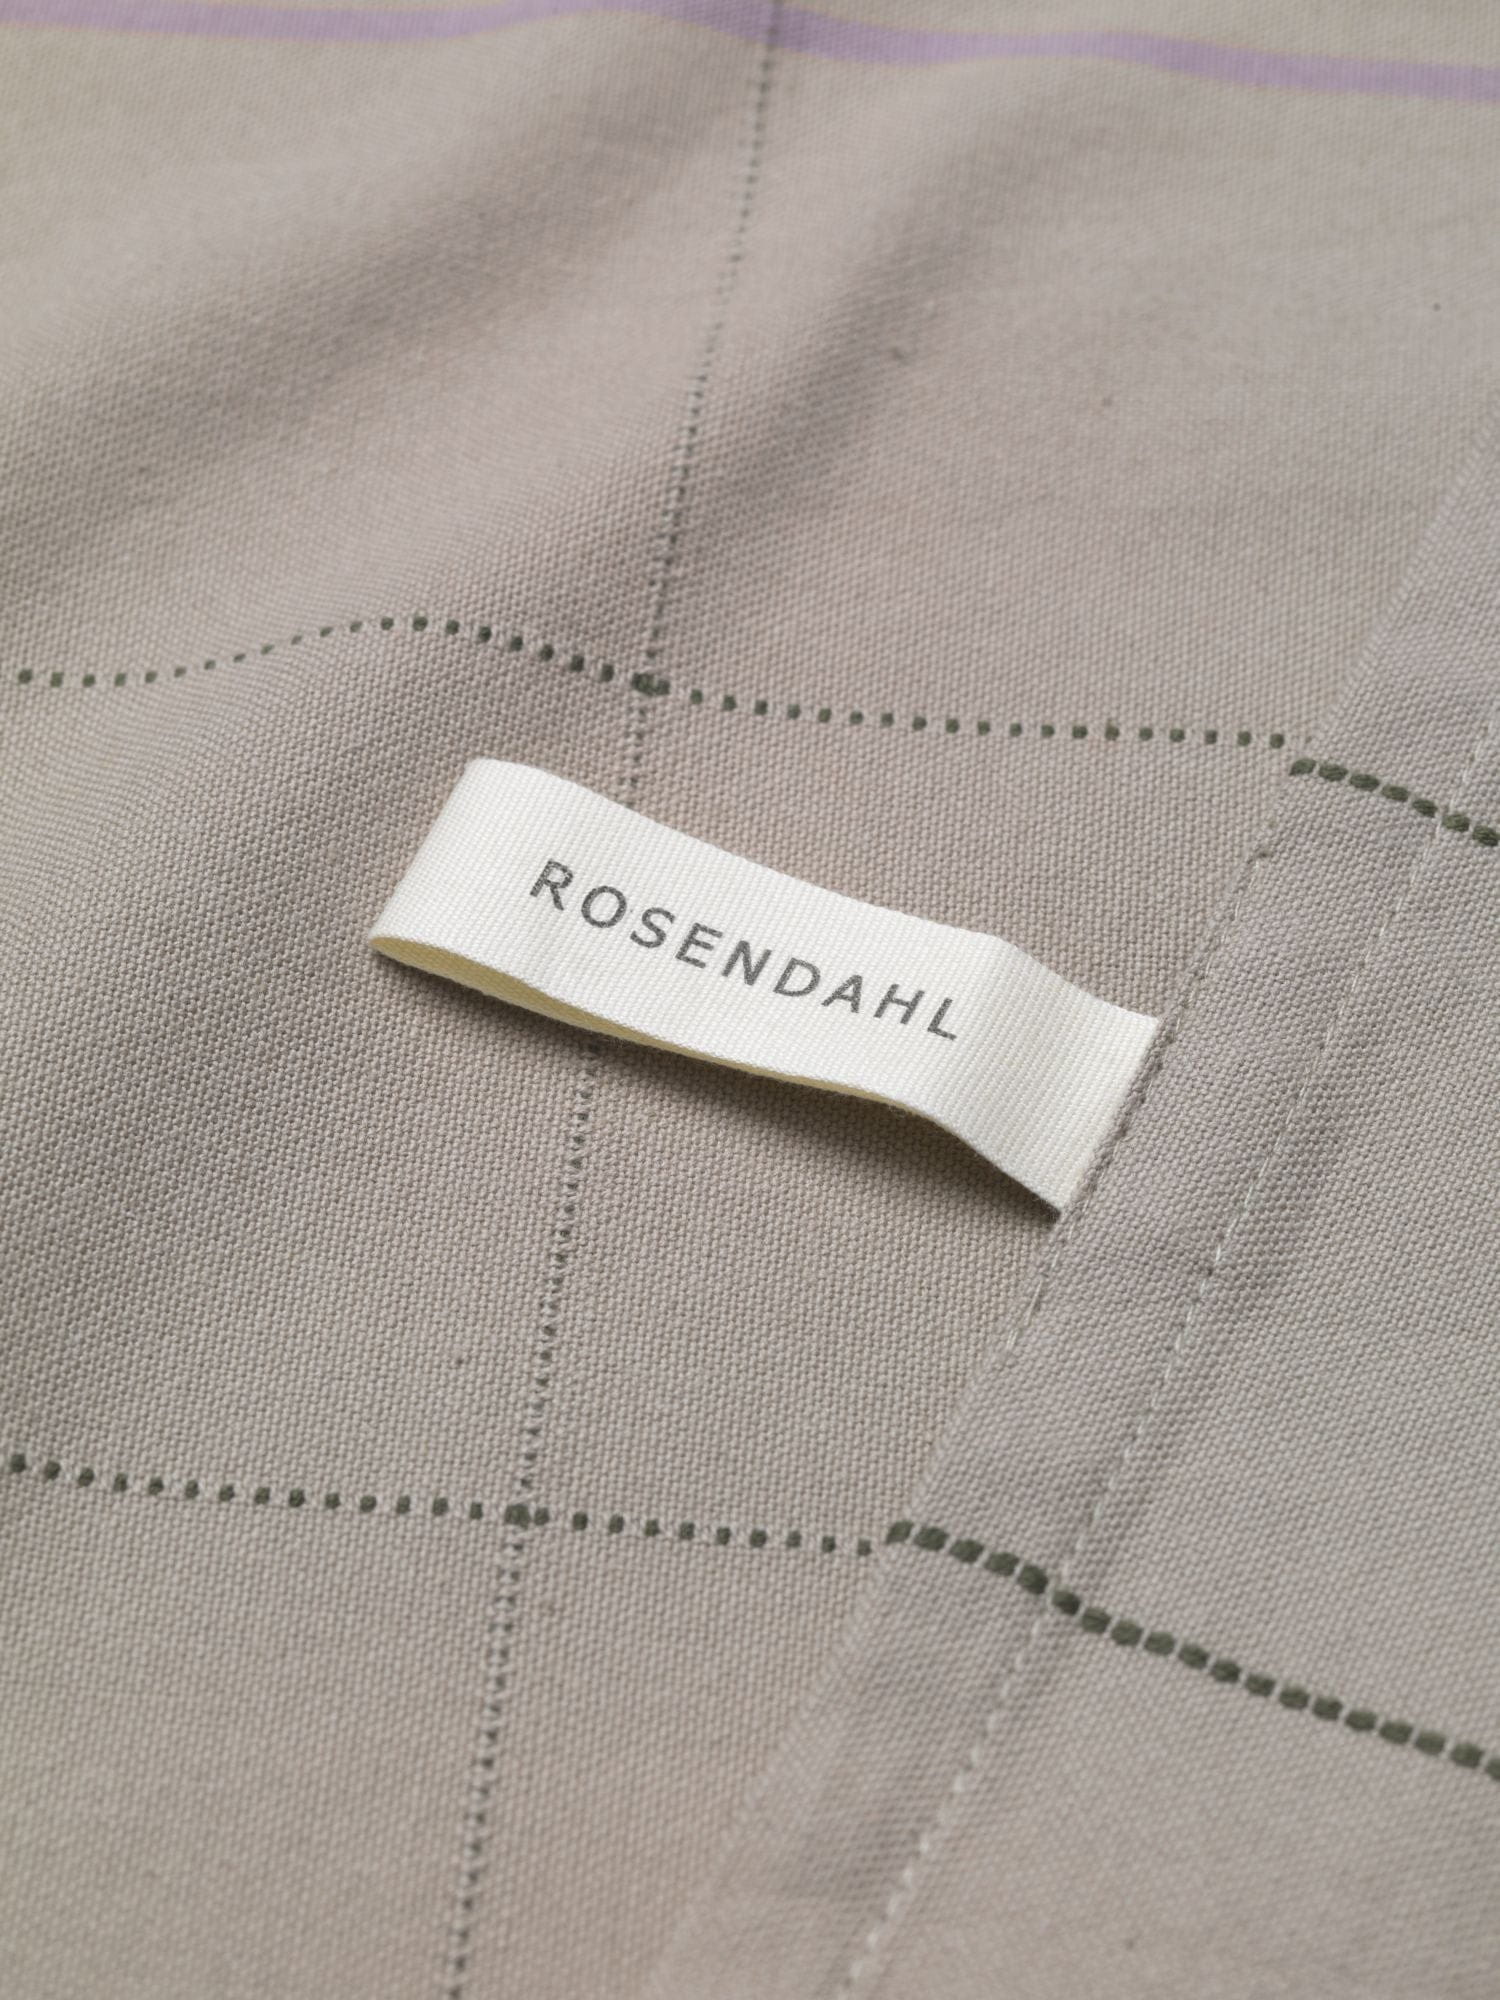 Rosendahl Rosendahl Textilien Gamma -Geschirrtuch 50x70 cm, Sand